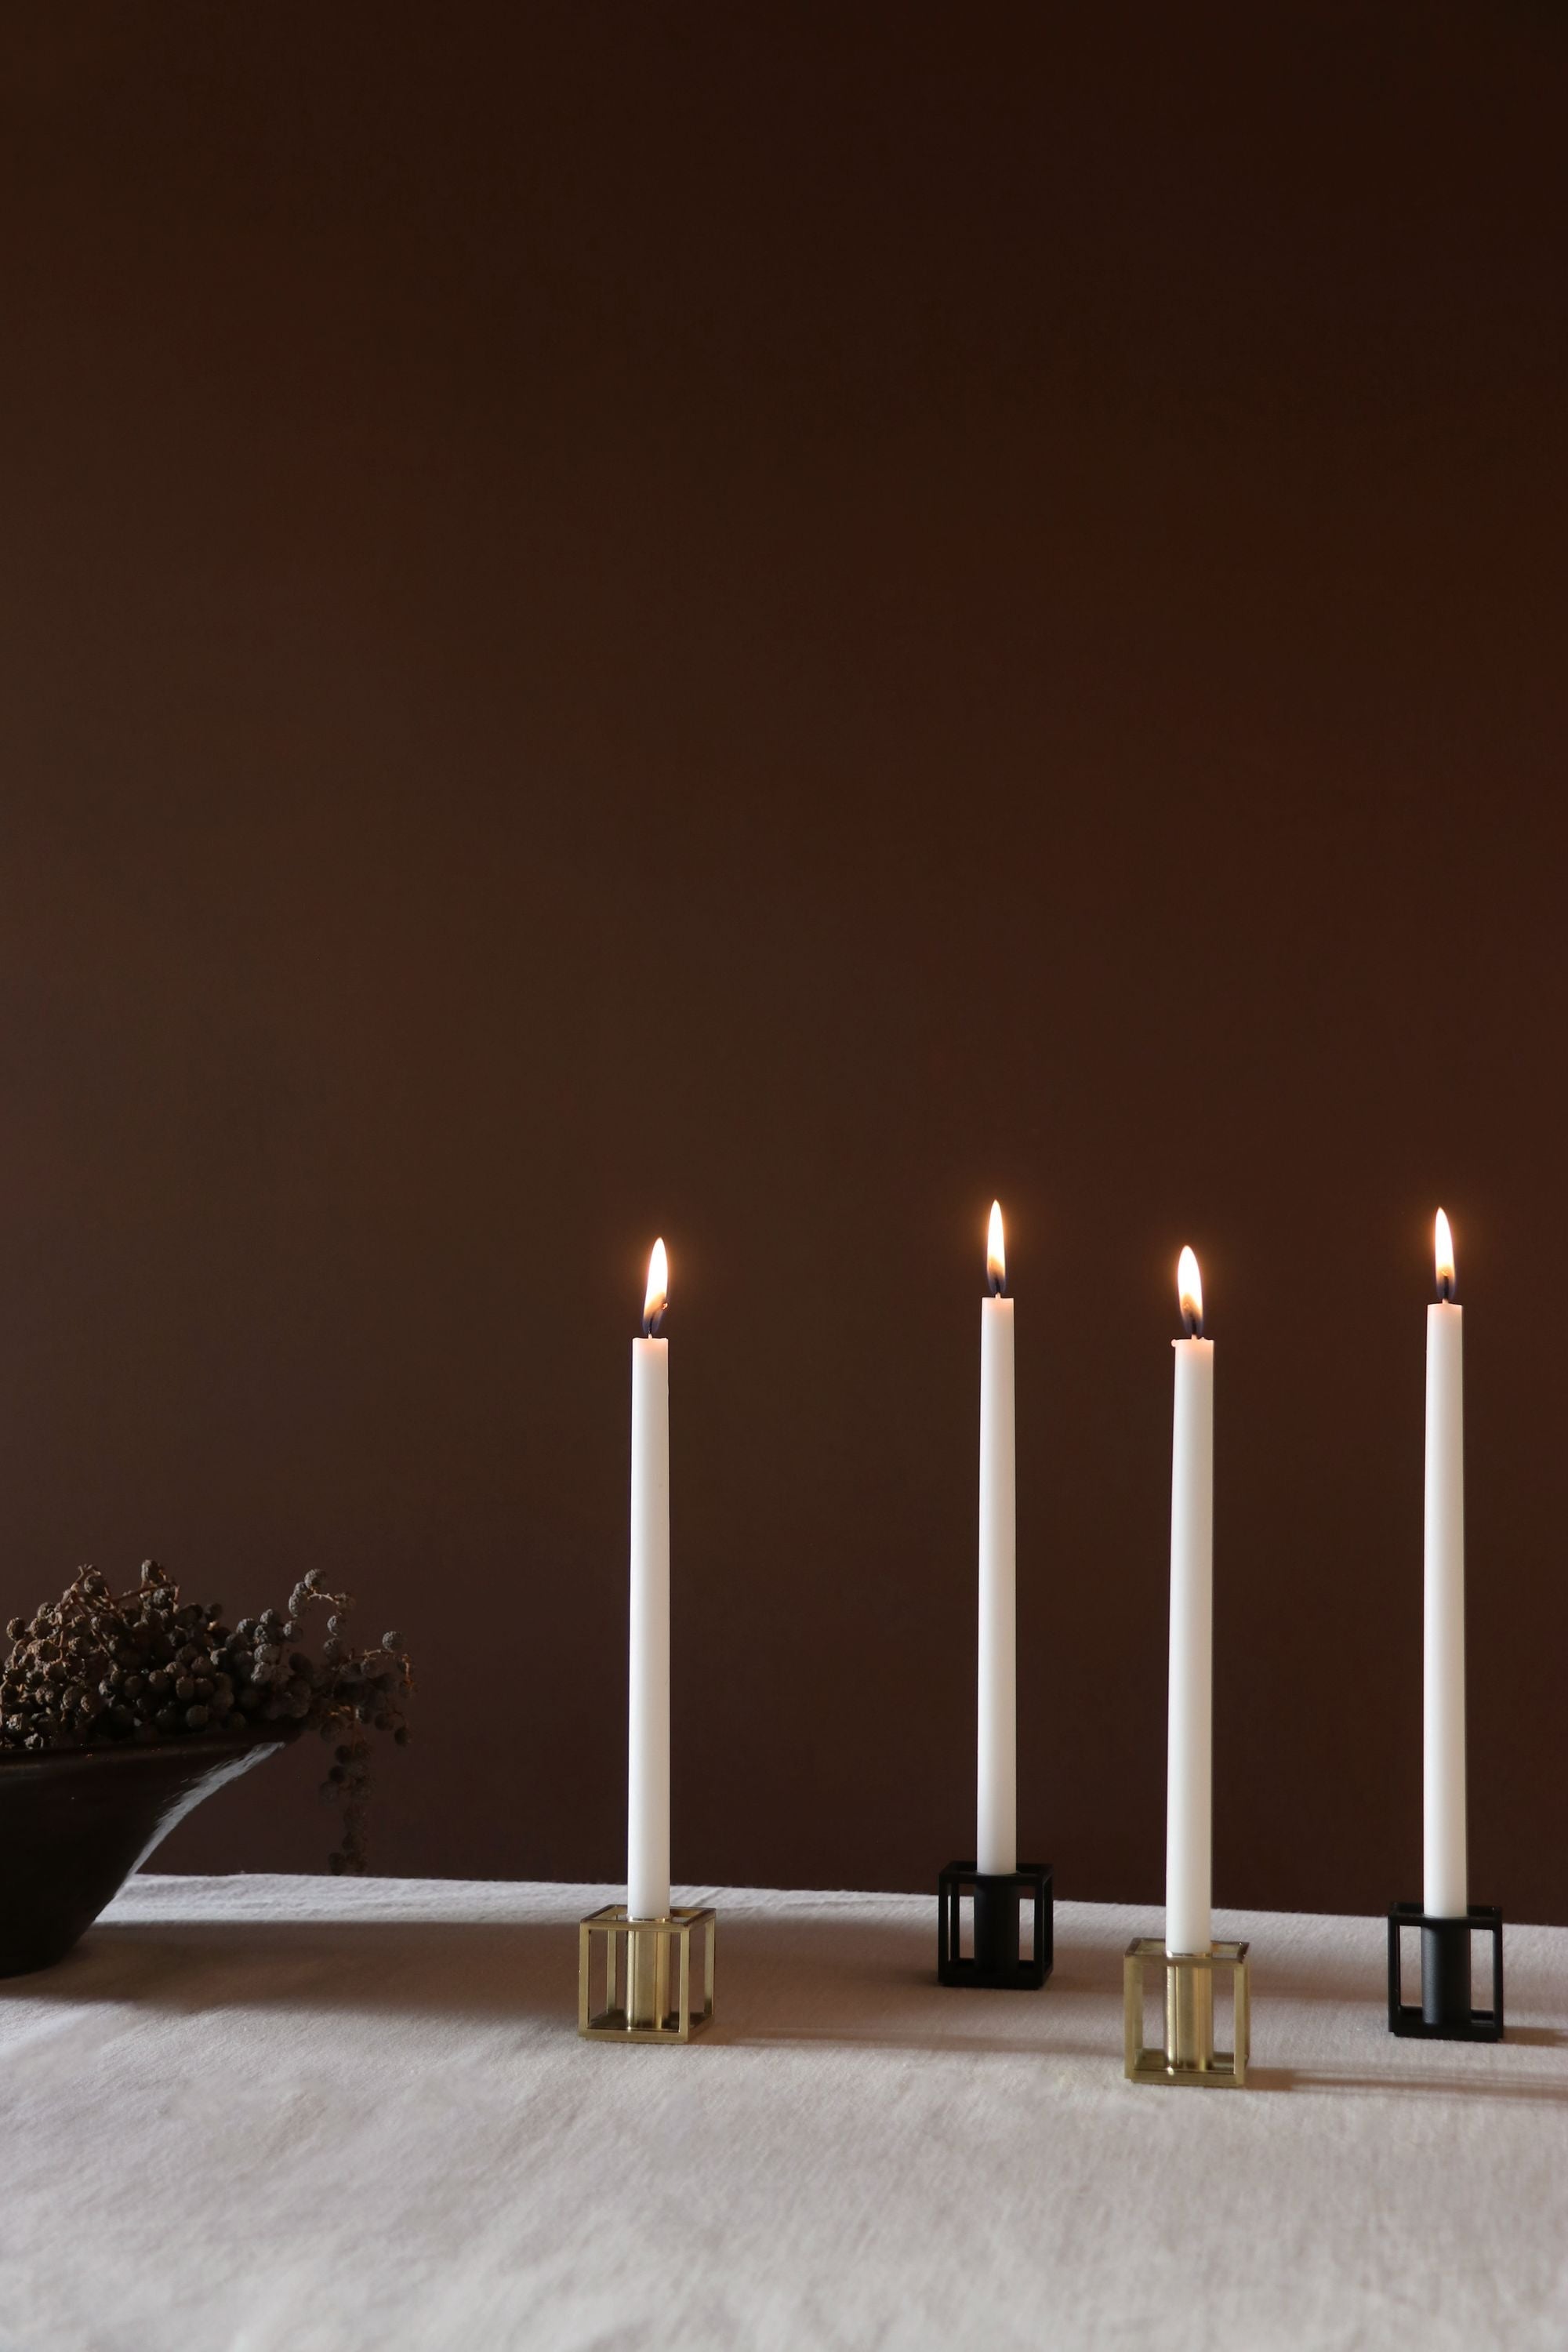 AUVO Kööpenhamina Kubus 1 kynttilänjalka, musta